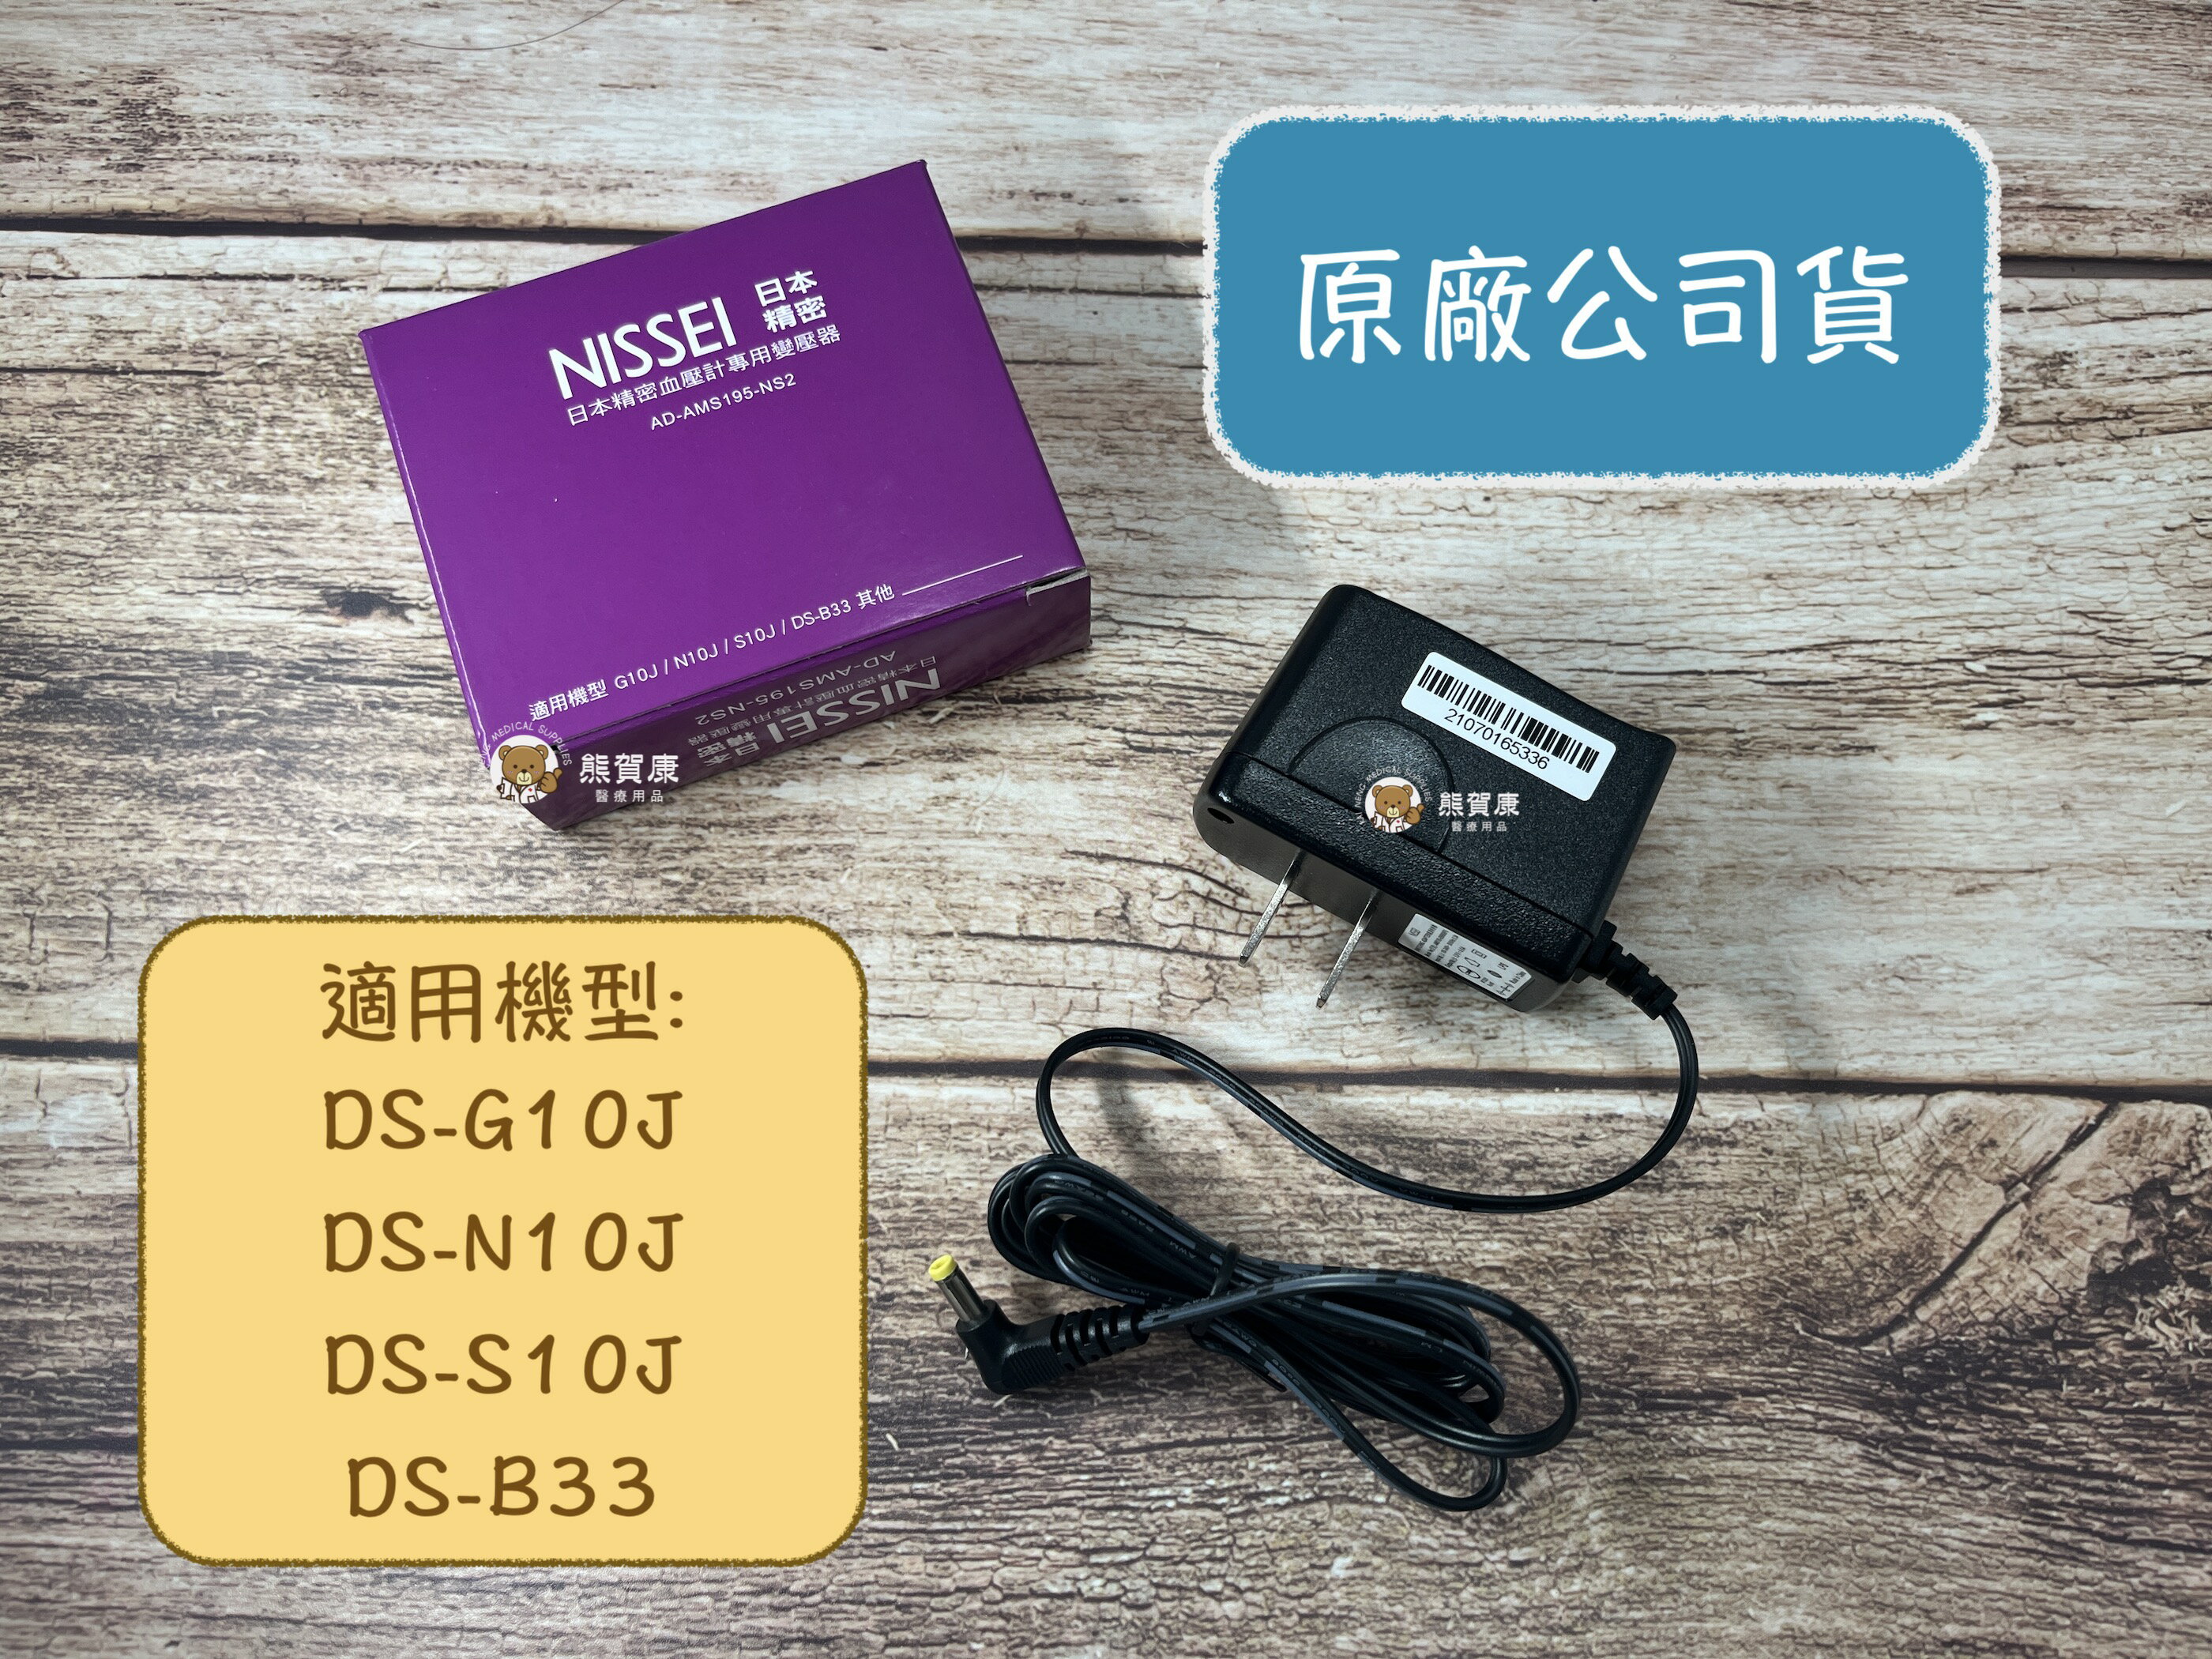 【日本精密NISSEI】原廠公司貨 血壓計變壓器 電源供應器 適用 G10J 、N10J、 S10J、 DS-B33 等